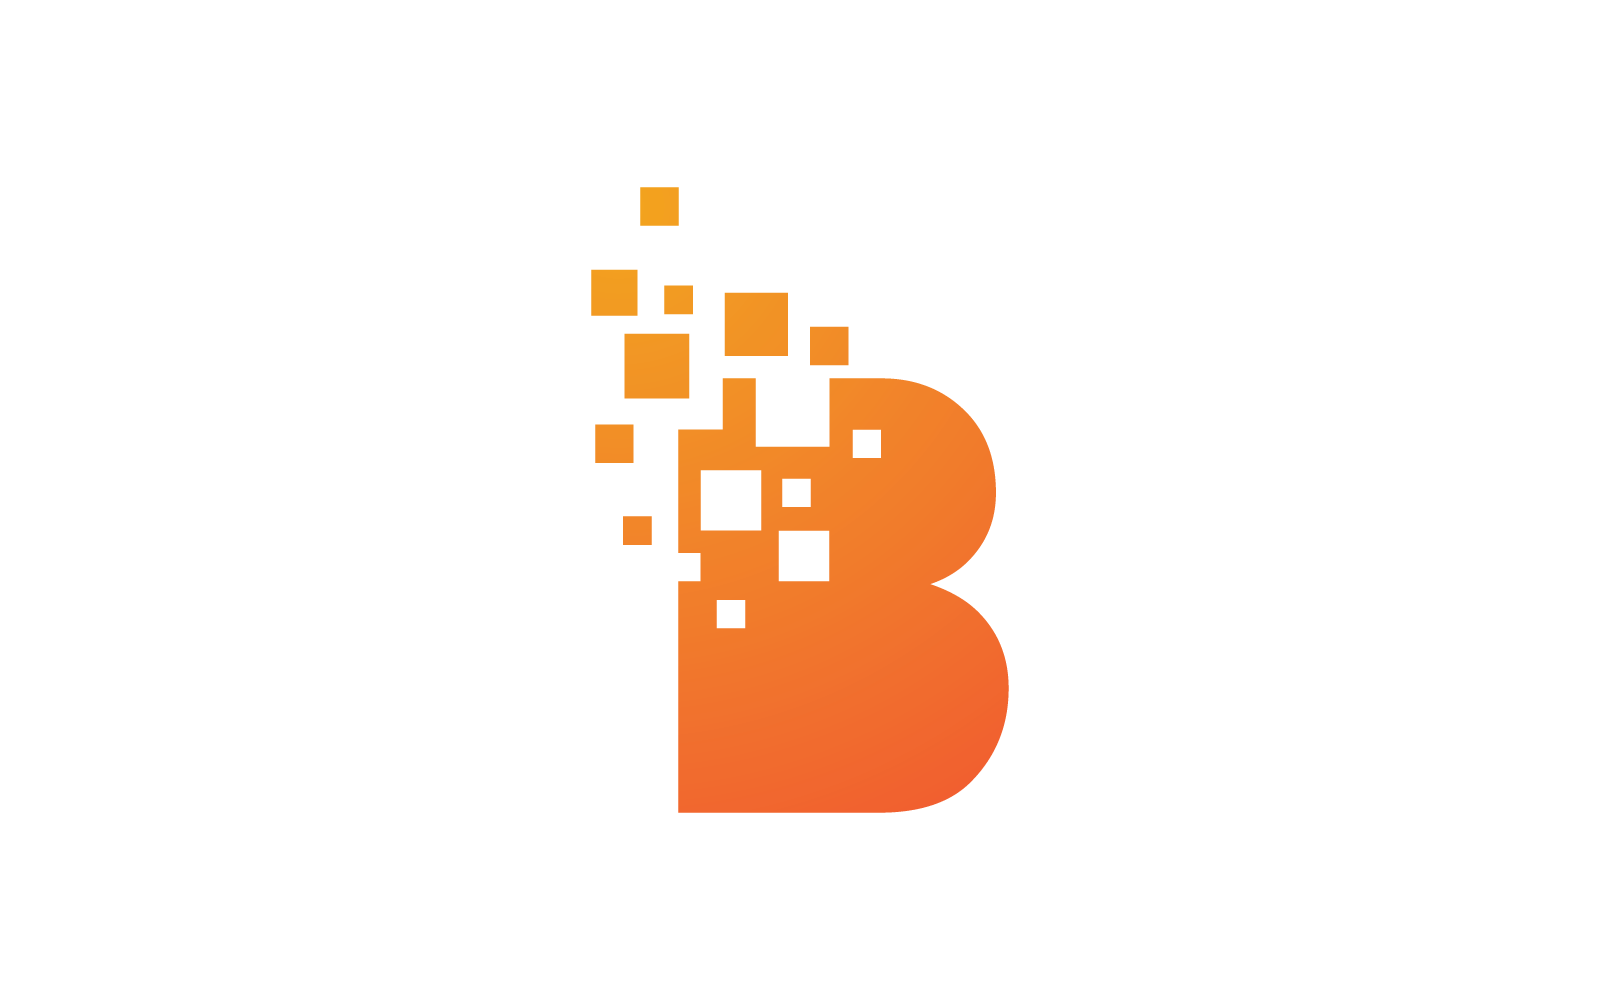 Diseño vectorial del logotipo de píxeles de letra B